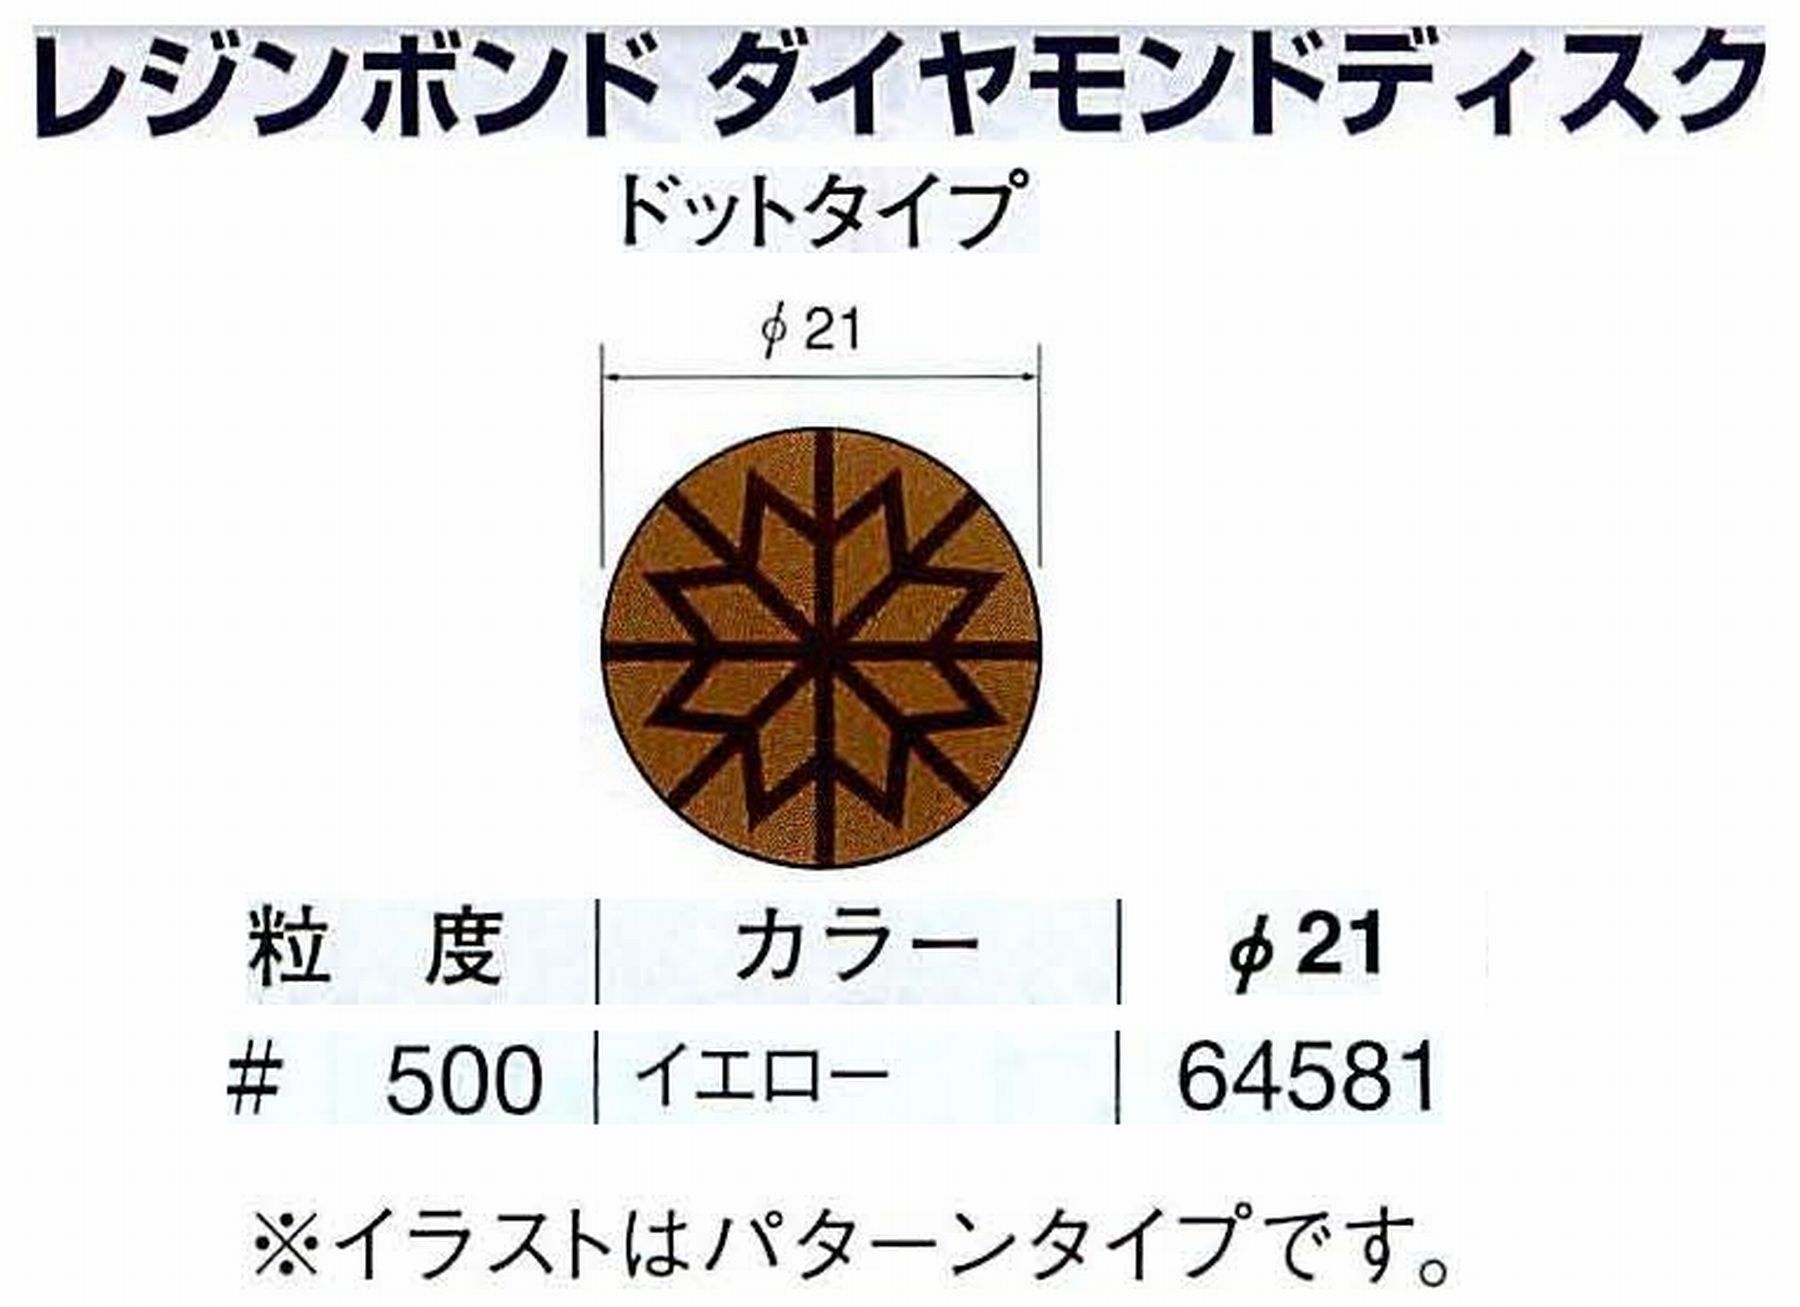 ナカニシ/NAKANISHI アングルグラインダ(電動・エアー) アングルアタッチメント専用工具 レジンボンド ダイヤモンドディスク(ドットタイプ) 64581